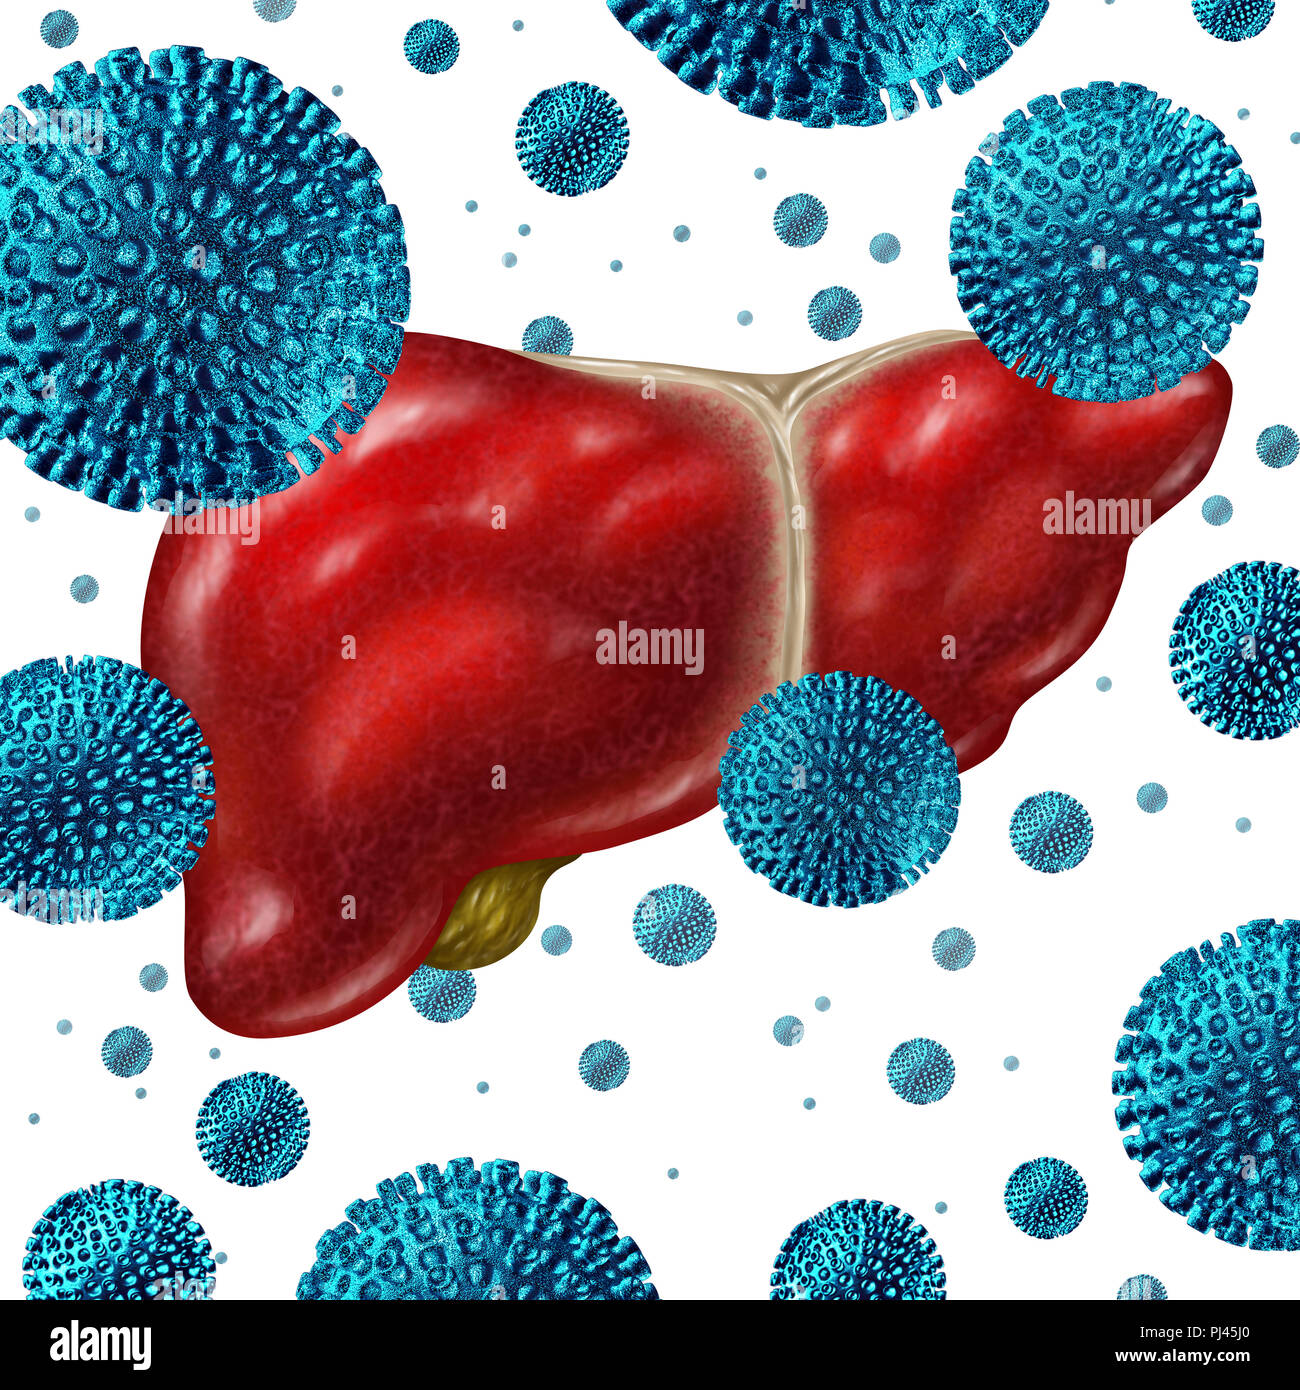 Concepto de enfermedad la hepatitis C como un grupo de virus humano tridimensional de células en un hígado humano como una ilustración médica por una infección viral. Foto de stock